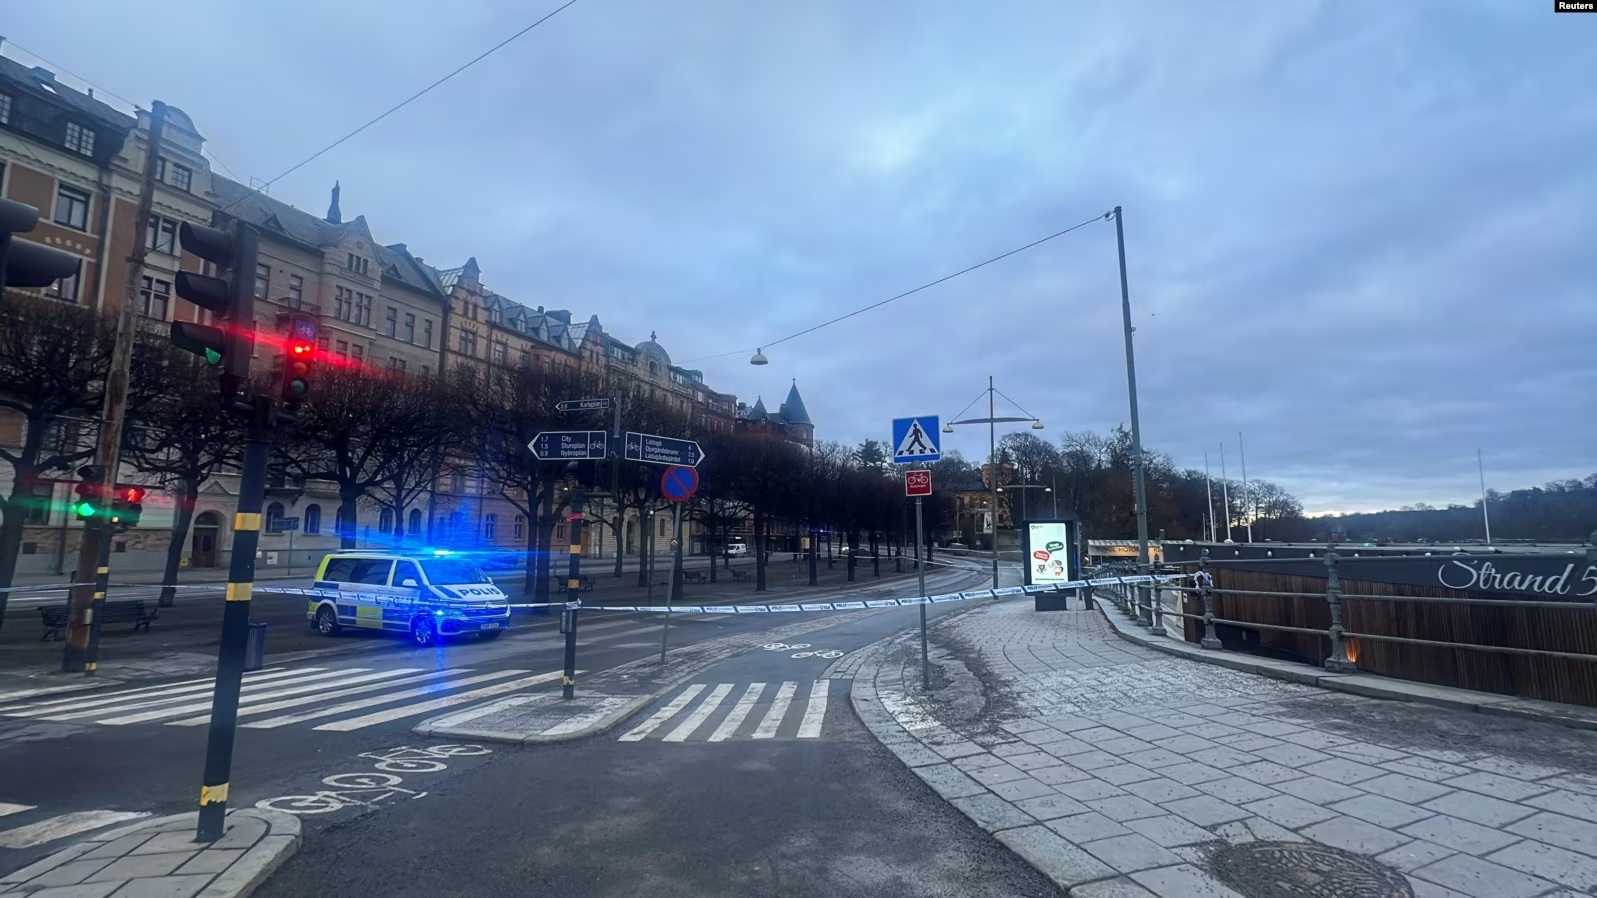 Një automjet i policisë i vendosur pranë rrugës që çon drejt Ambasadës së Izraelit në Stokholm, Suedi, 31 janar 2024.